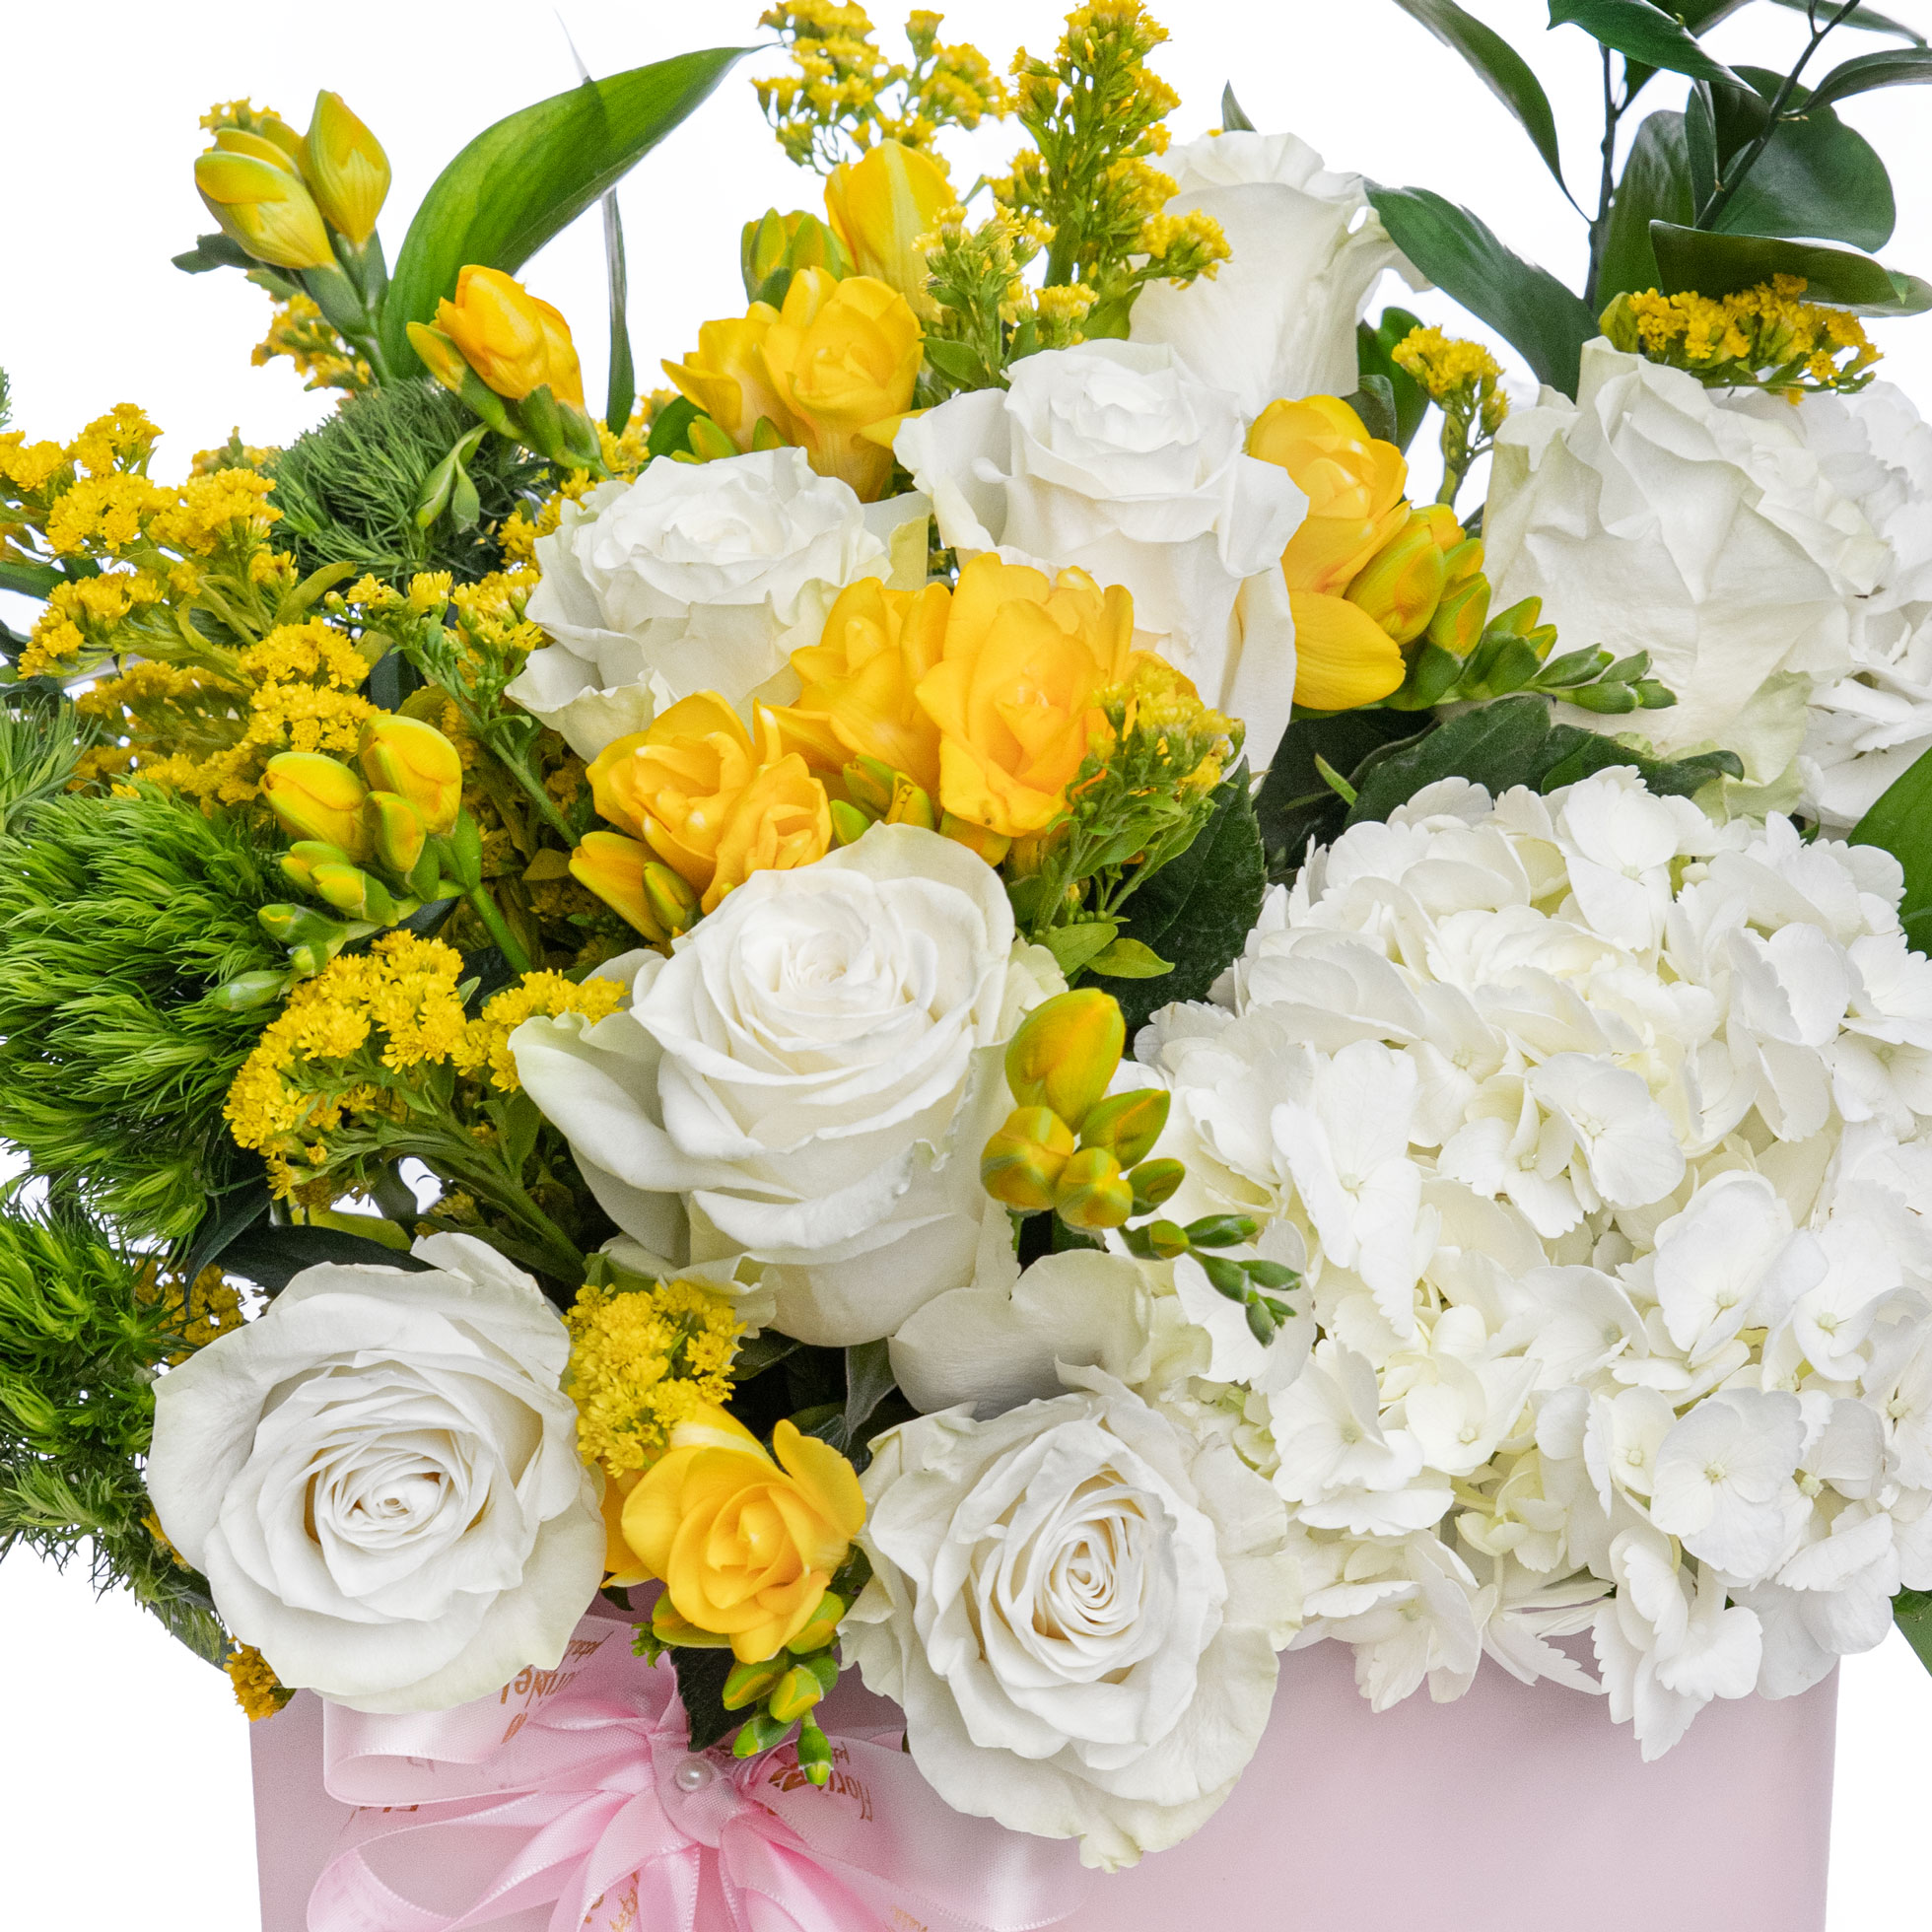 Aranjament floral cutie cu trandafiri, frezii si garoafe verzi